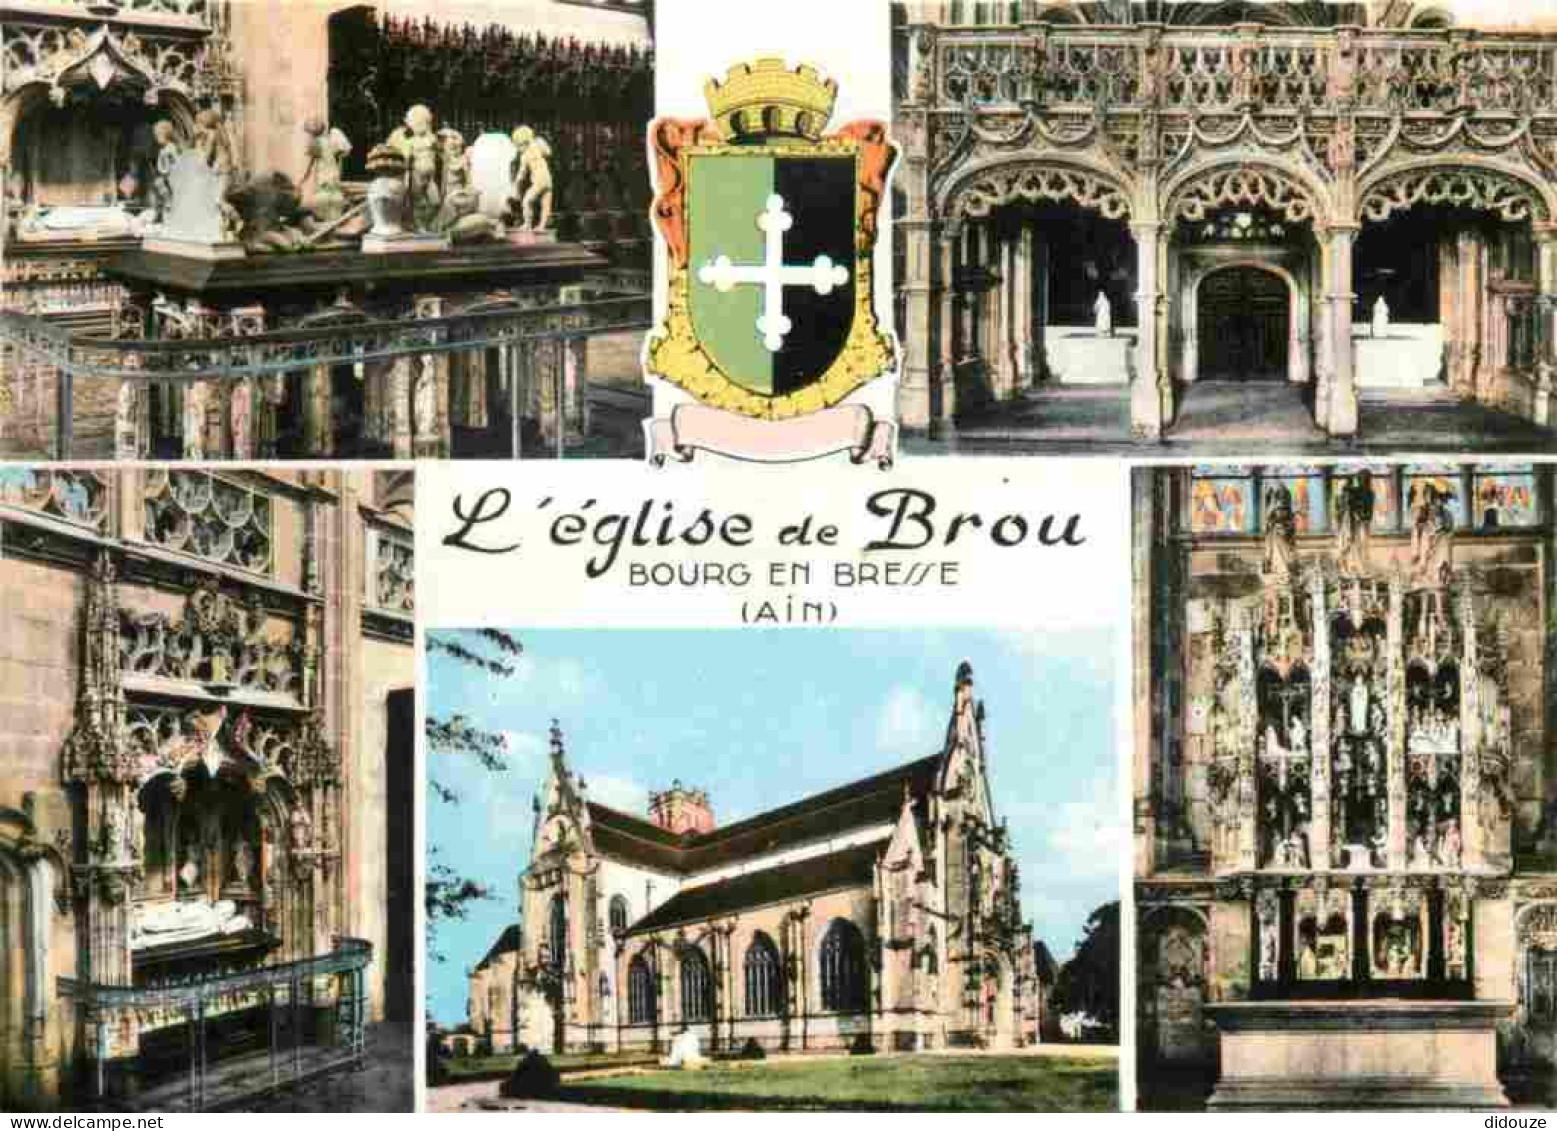 01 - Bourg En Bresse - Eglise De Brou - Intérieur De L'Eglise De Brou - Multivues - Mention Photographie Véritable - Car - Brou - Kerk